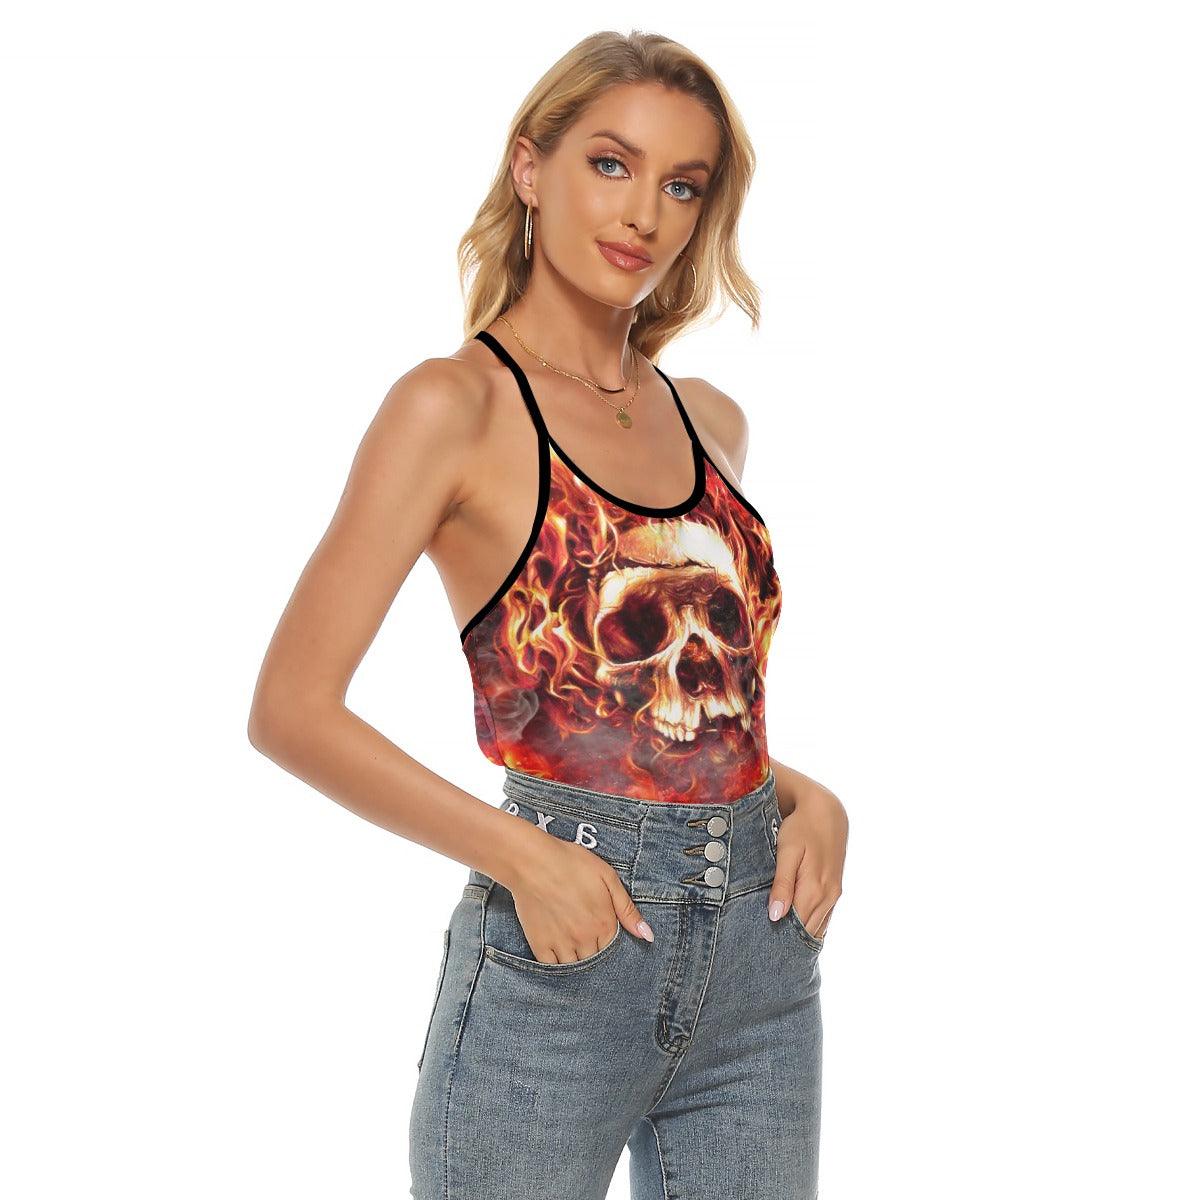 Fire Hell Skull Artwork Criss-Cross Open Back Tank Top, Trending T-Shirt For Women - Wonder Skull